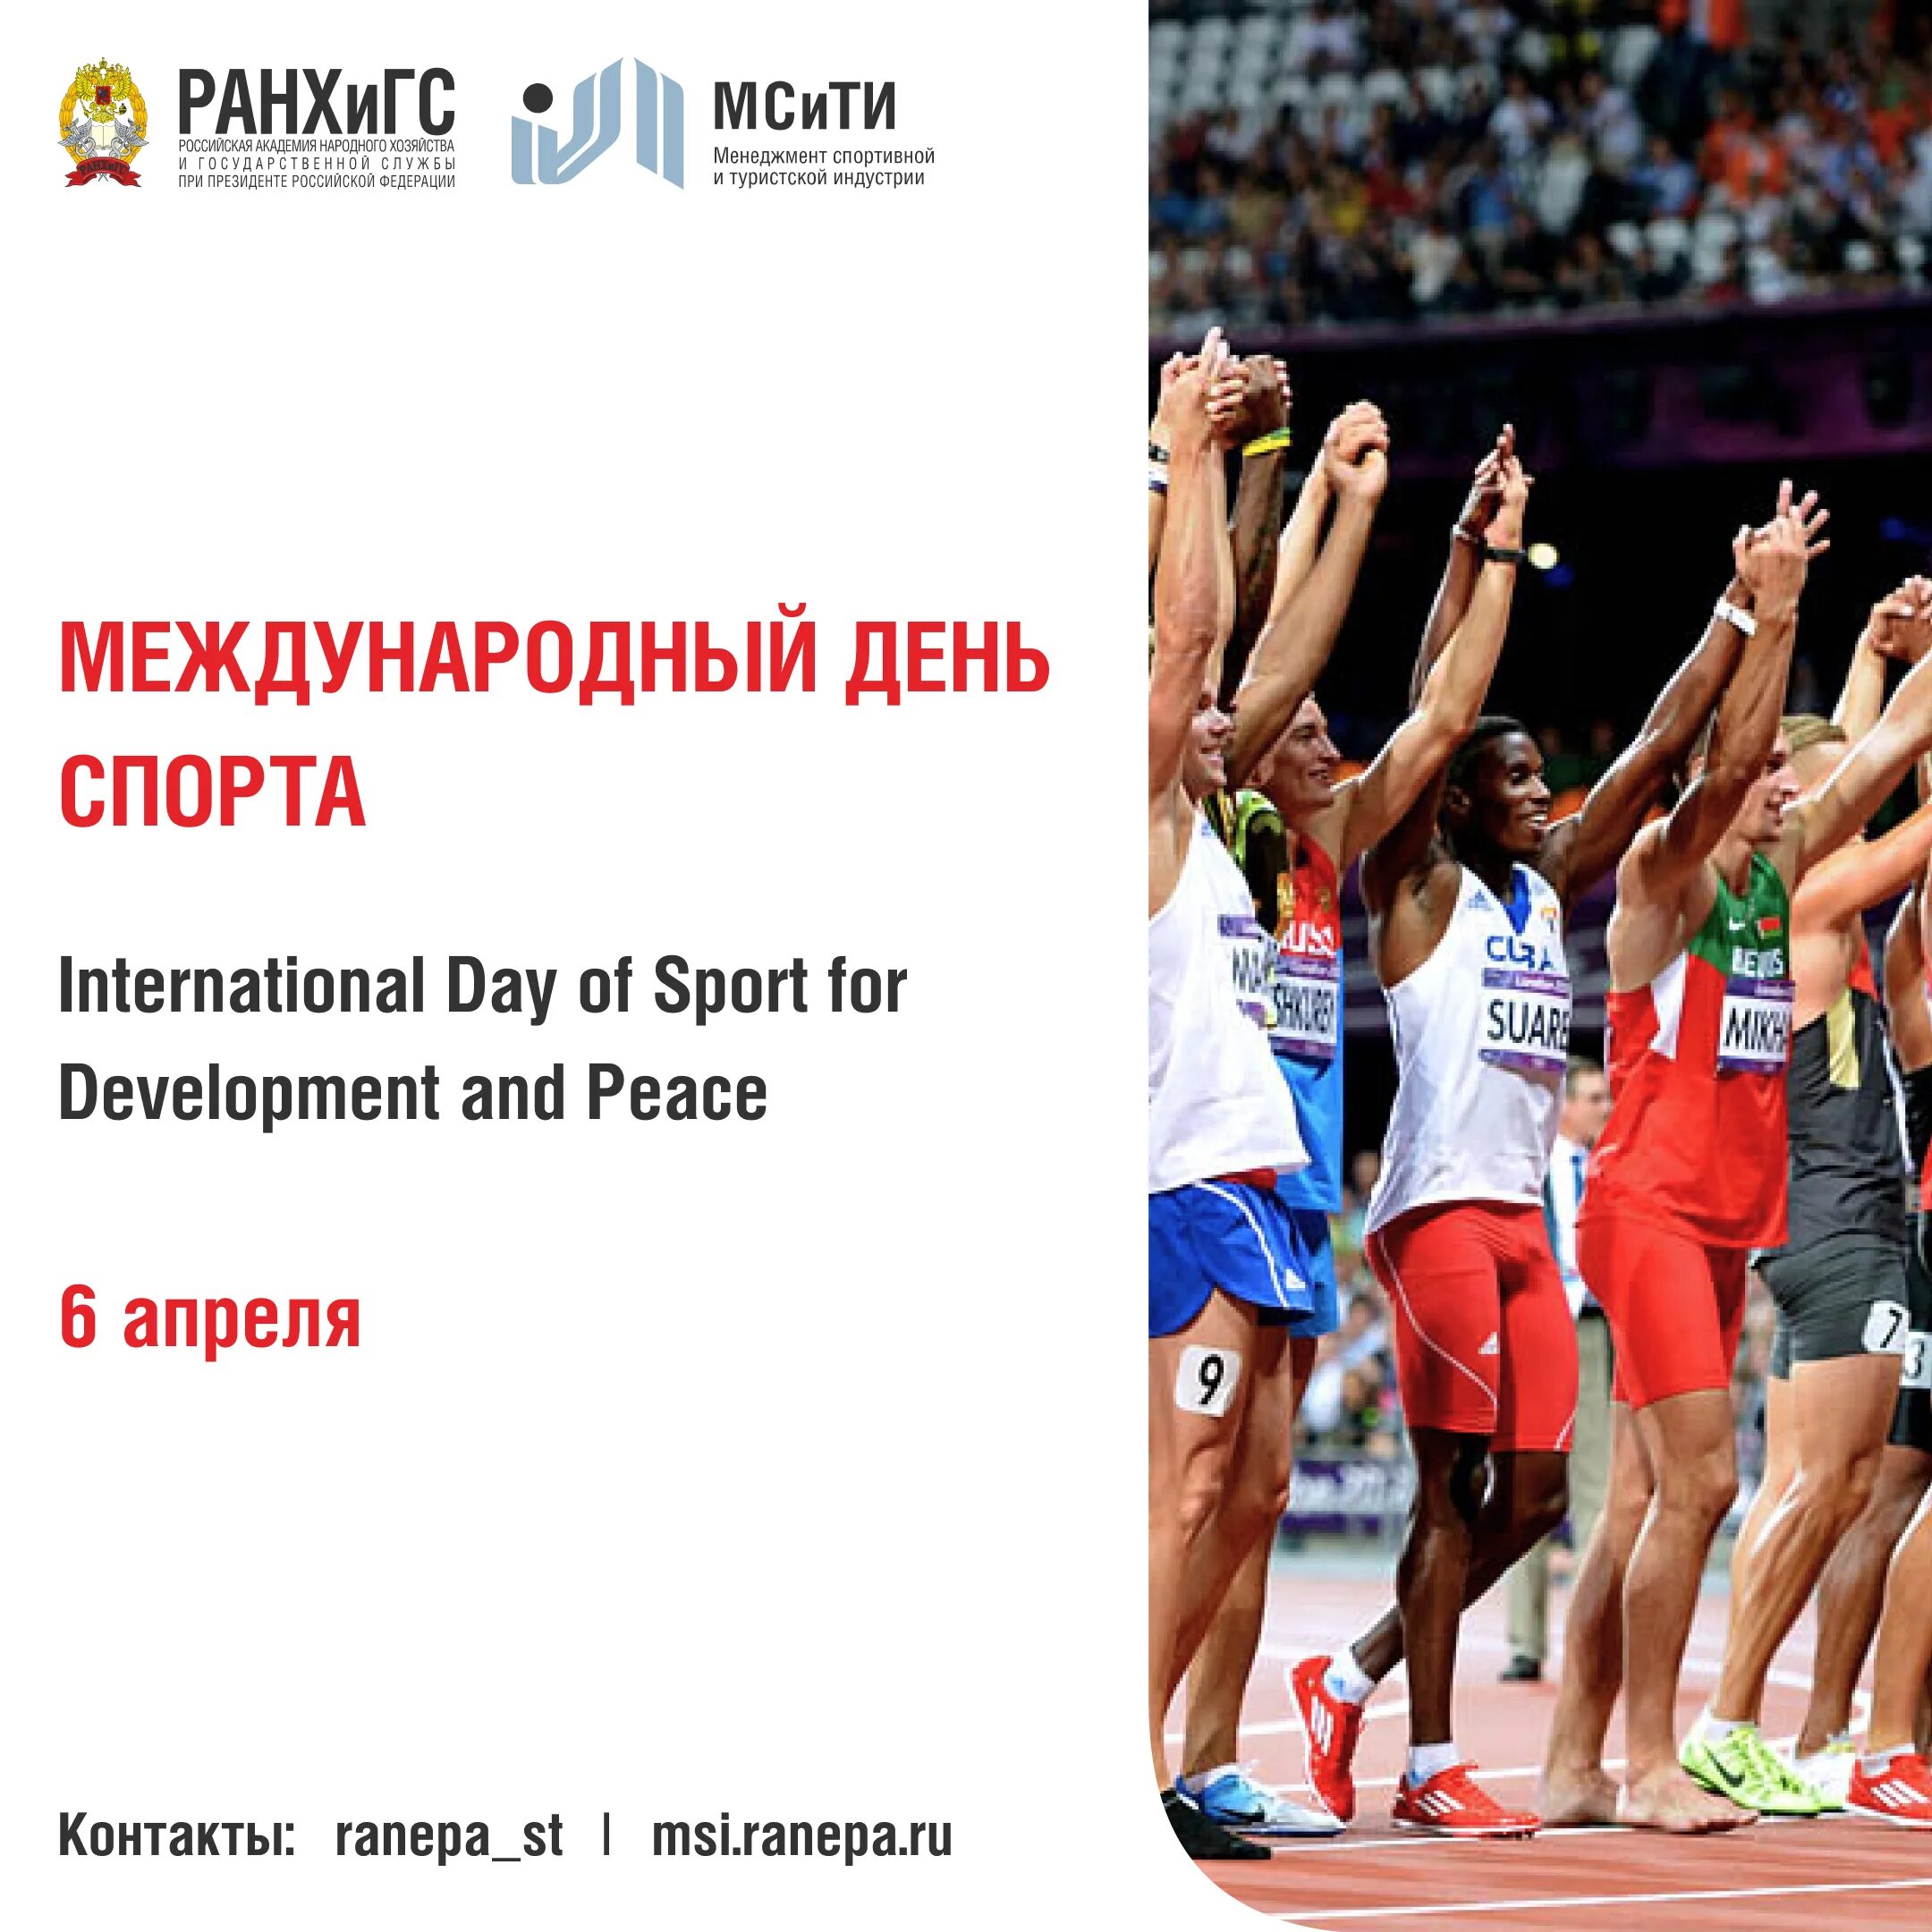 6 апреля международный день спорта. Когда Международный день спорта.